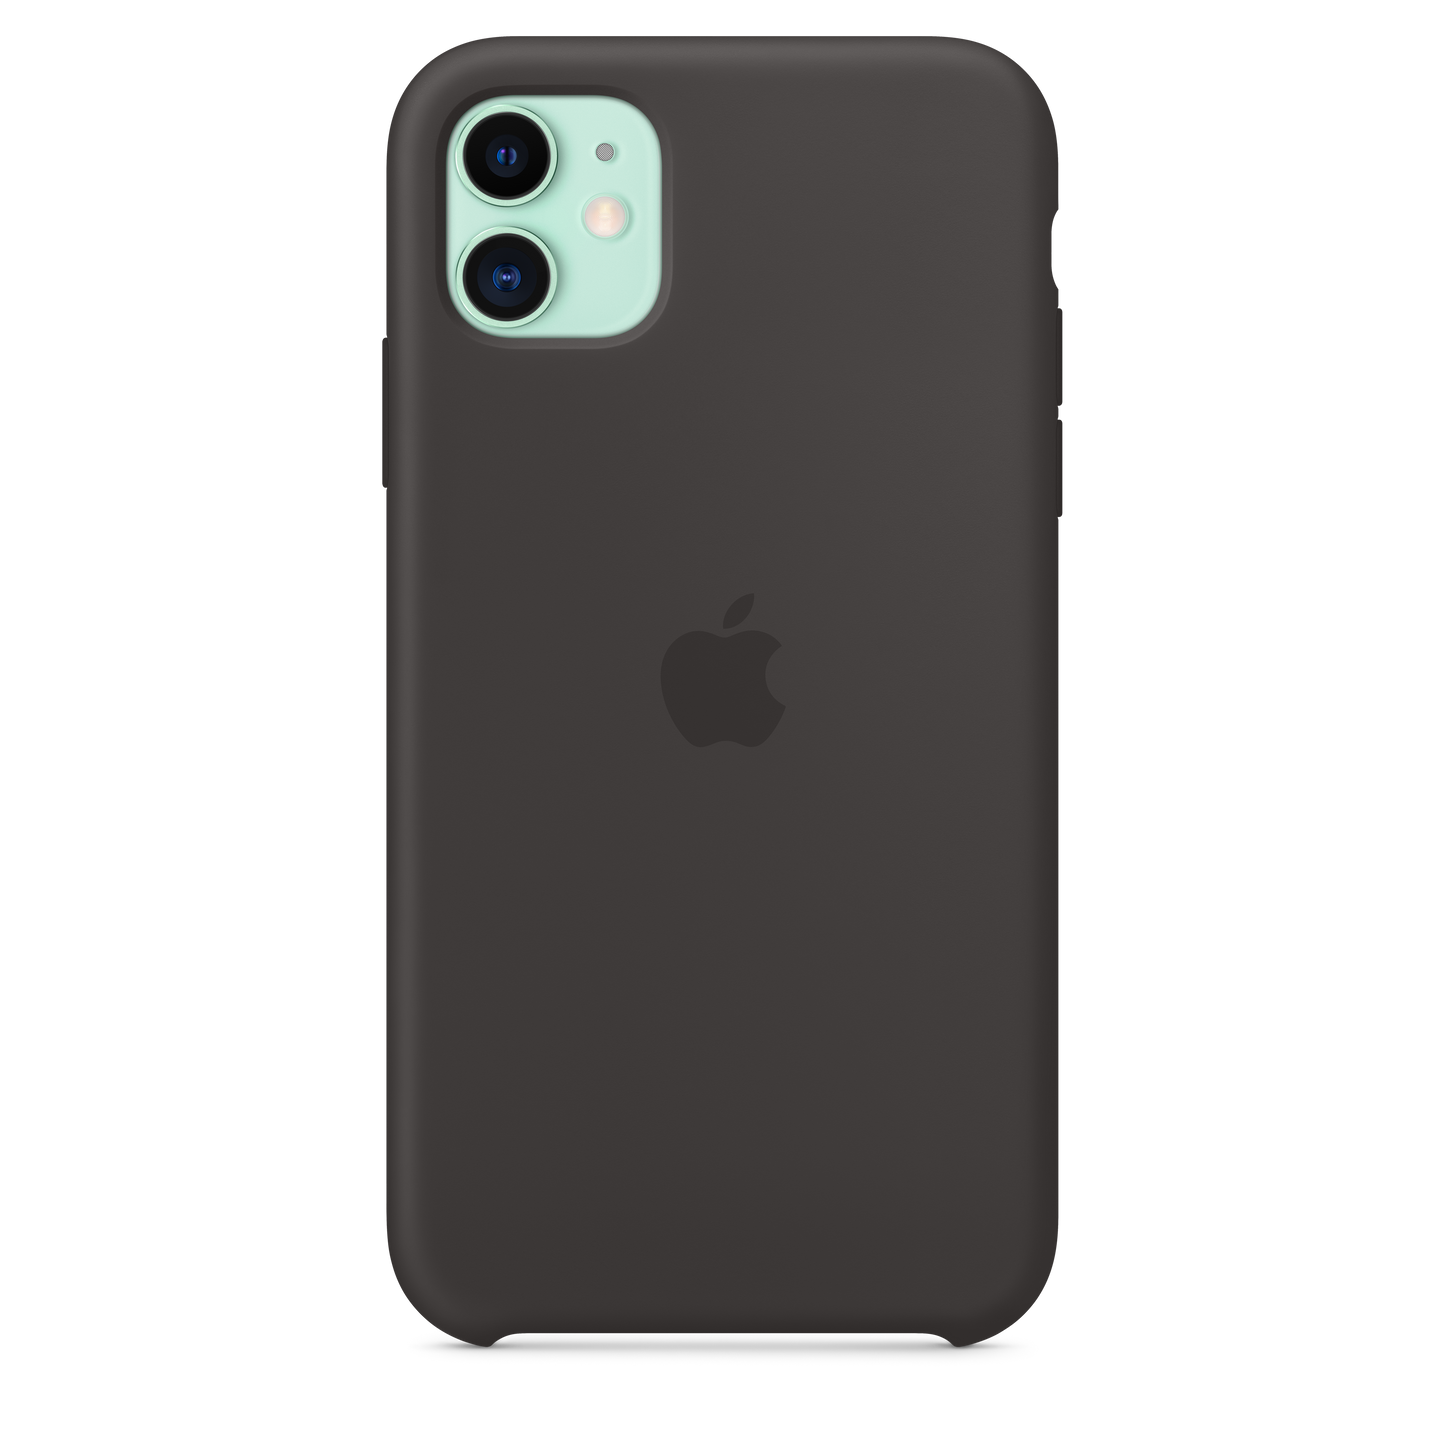 Funda de silicona para el iPhone 11, Negro - Rossellimac